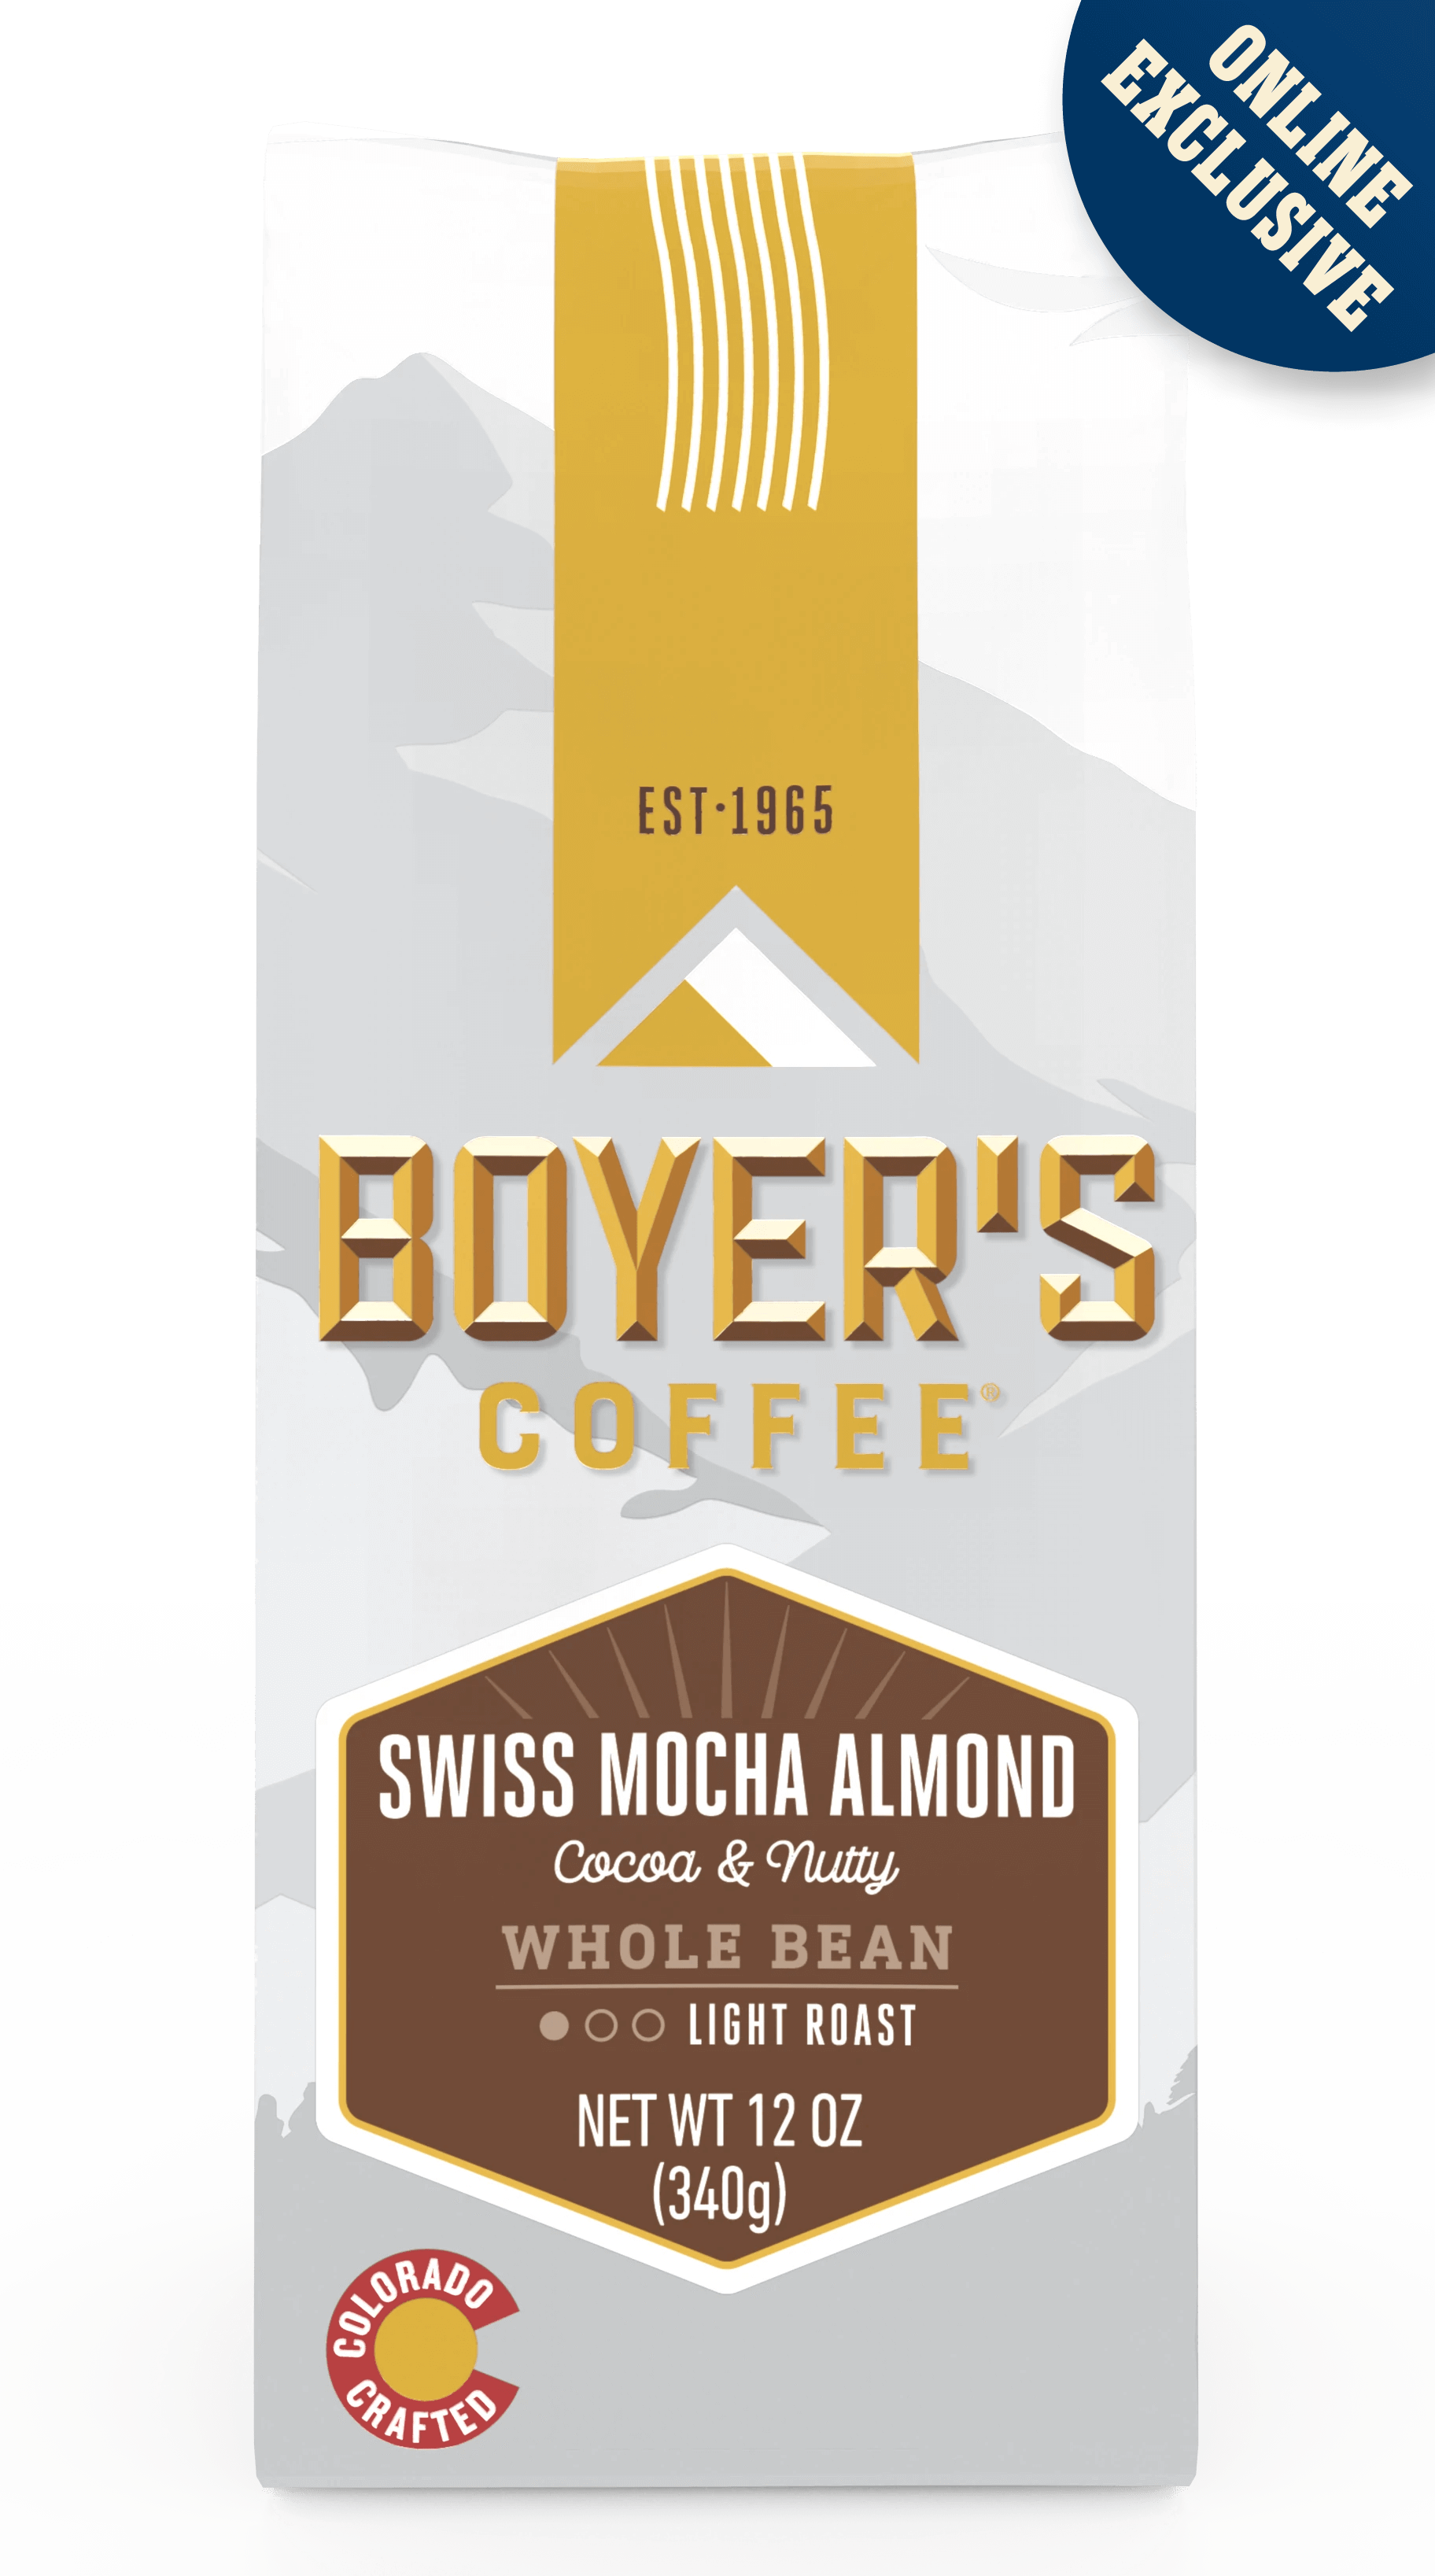 Swiss Mocha Almond Coffee